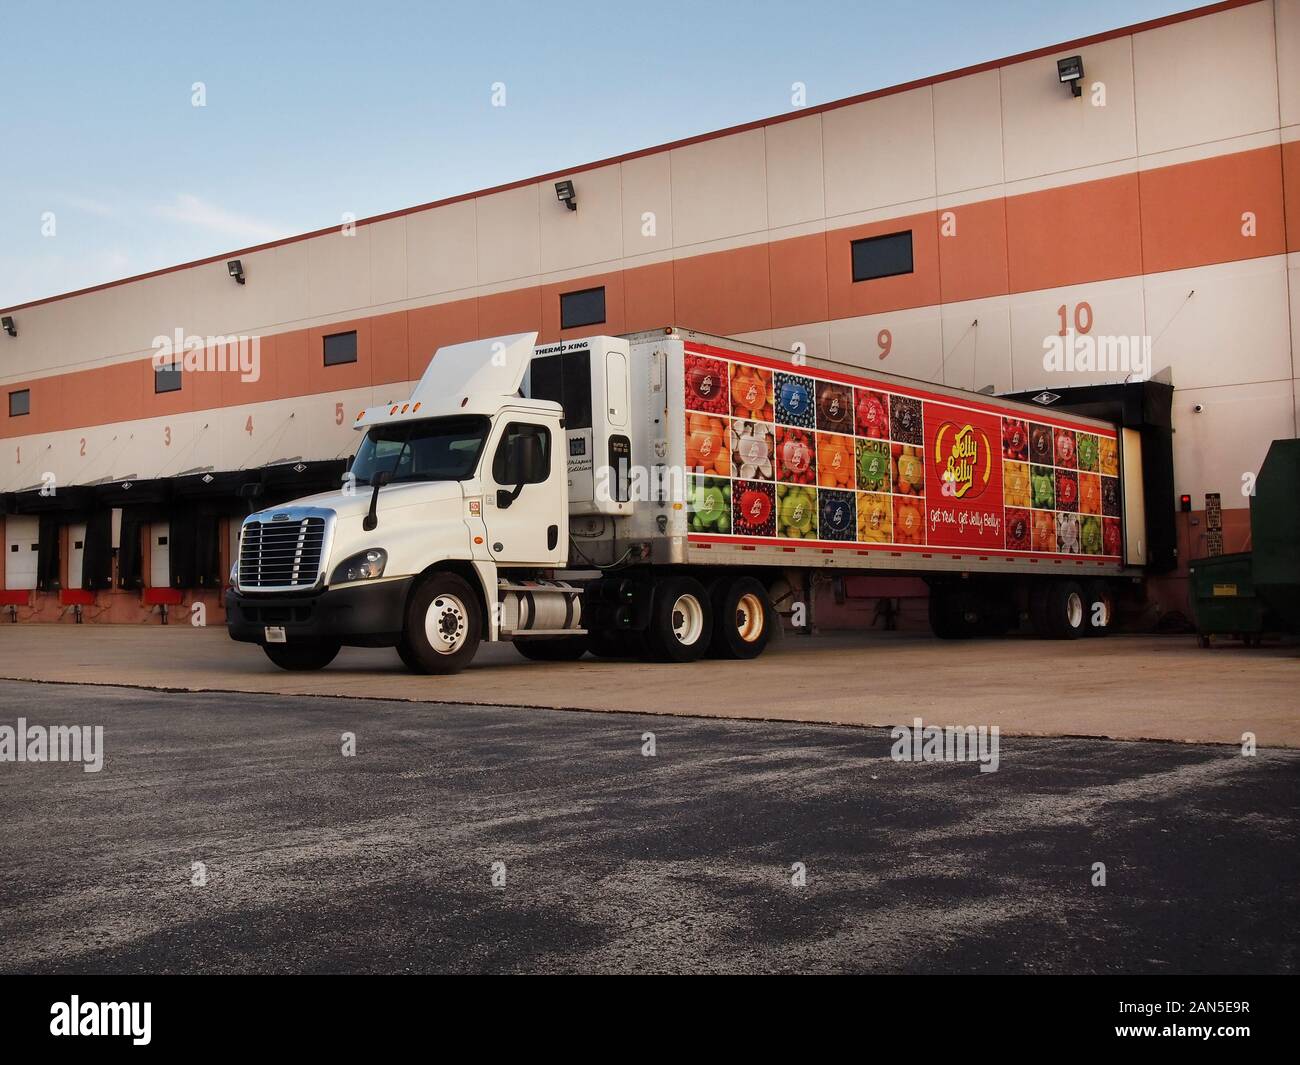 PLEASANT PRAIRIE, WISCONSIN - Juli 28, 2018: Ein langer Traktoren Anhänger Lkw mit Jelly Belly logo und Bunte Jelly Bean Fotos dekoriert gezogen wird int Stockfoto